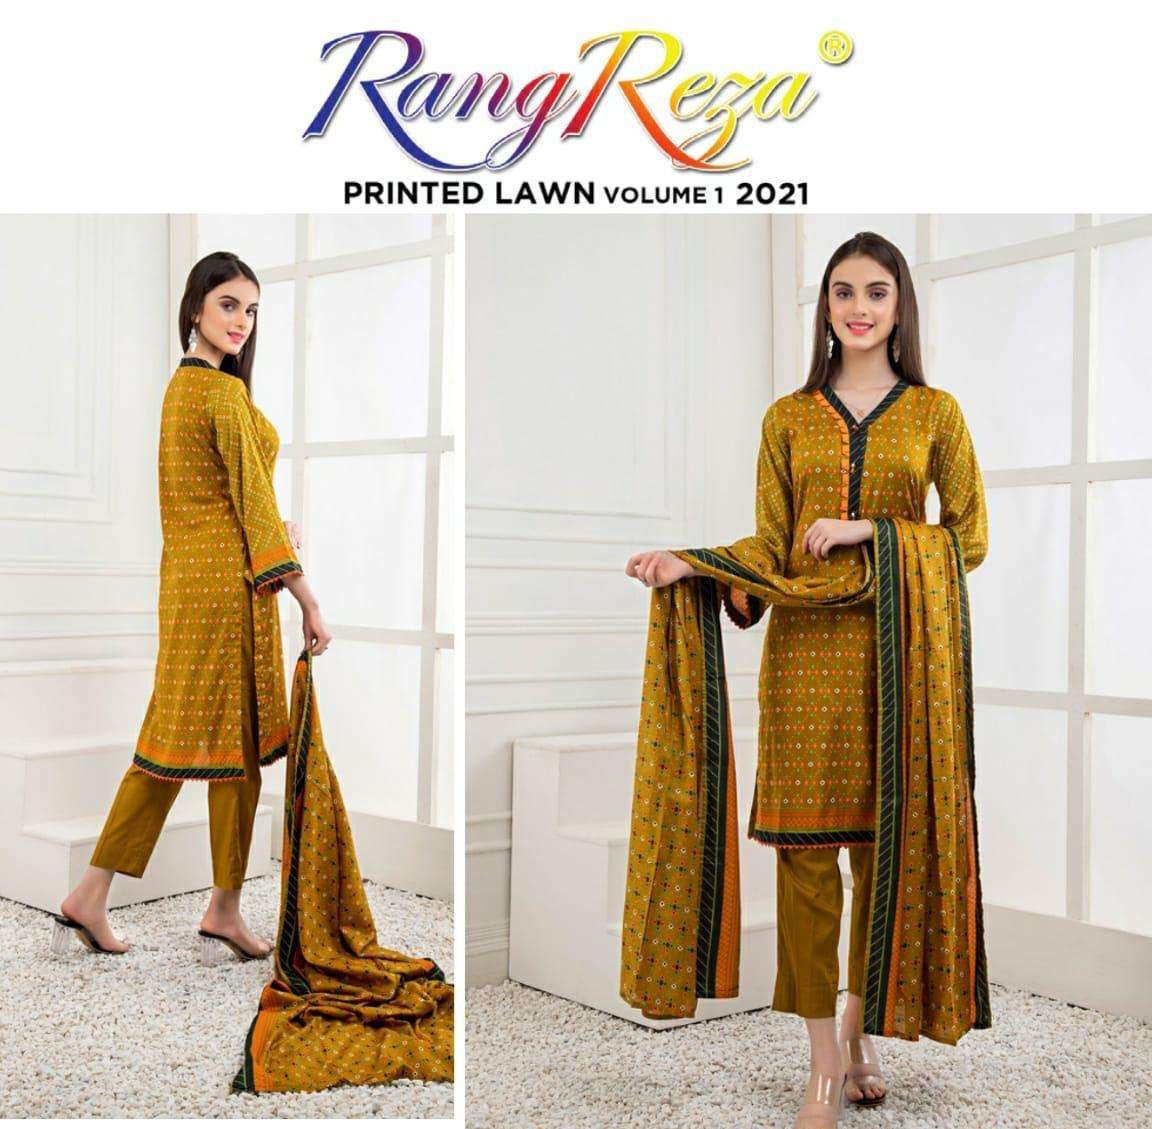 Zs Textiles Rang Reza Lawn Vol 1 Lawn Printed Pakistani Coll...